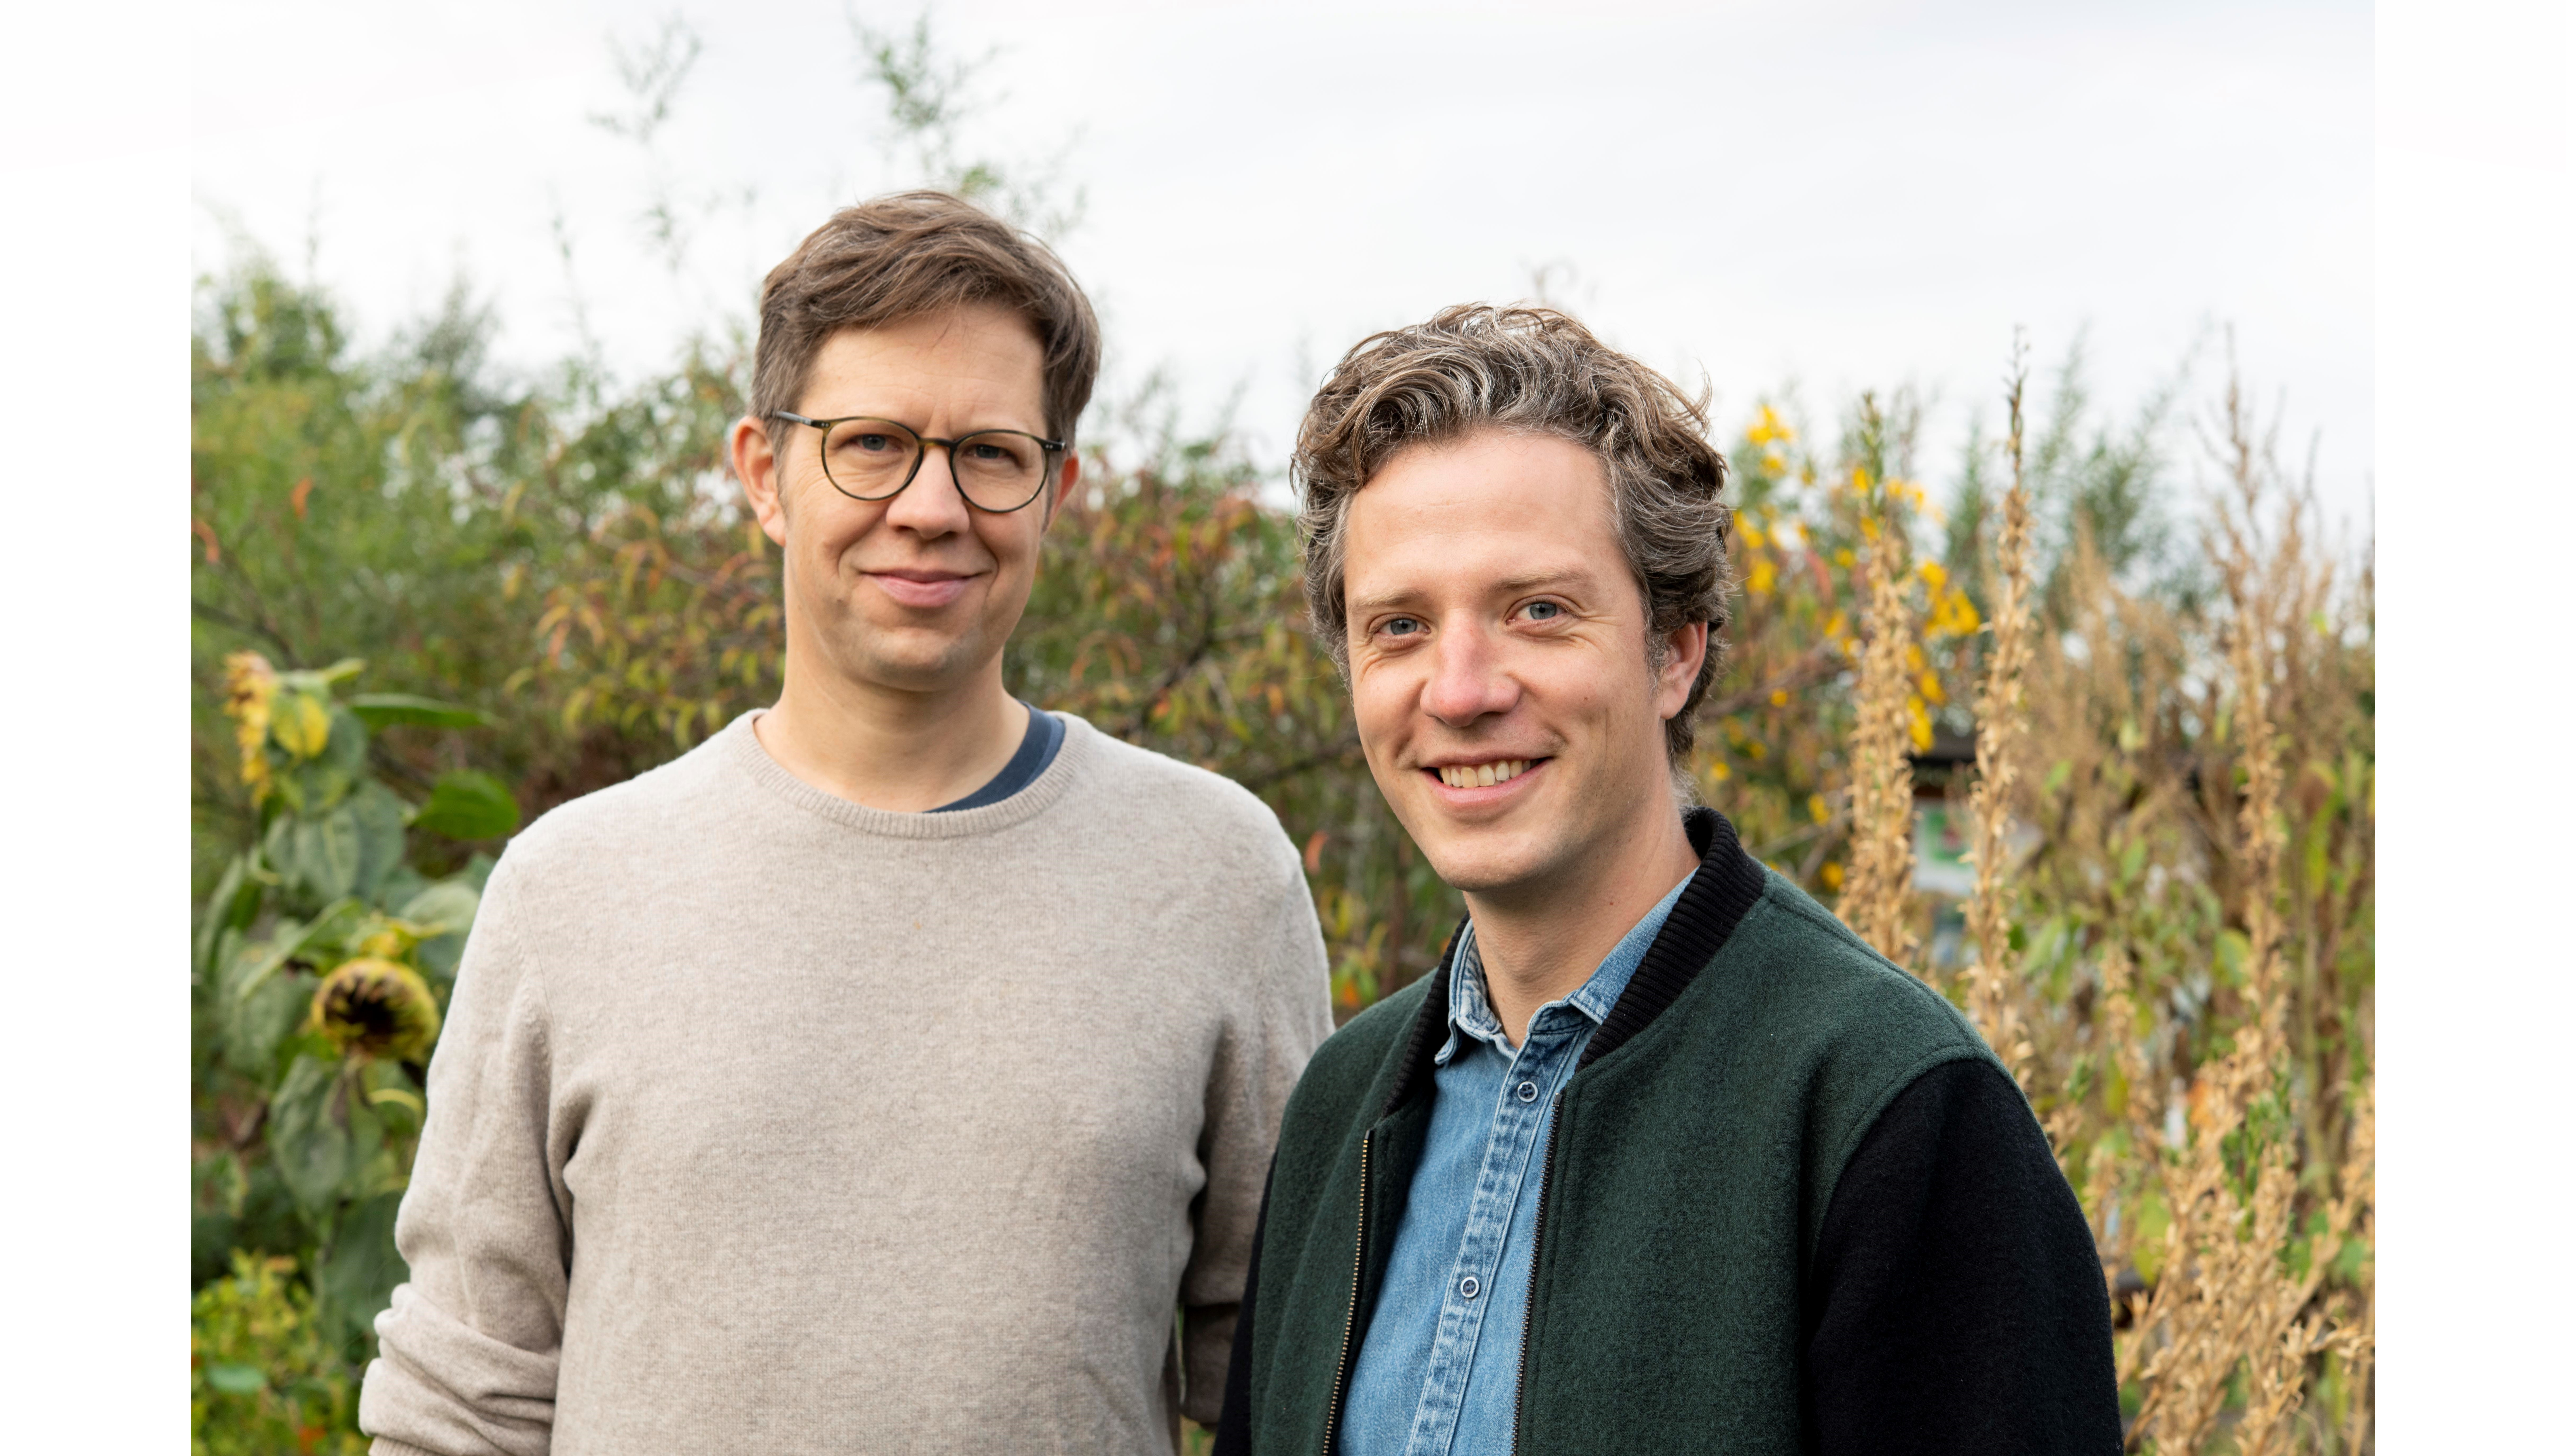 Mit ihrer Idee wollen Tiny Farms-Gründer Tobias und Jacob eine dezentrale, nachhaltige Versorgung der Städte ermöglichen.